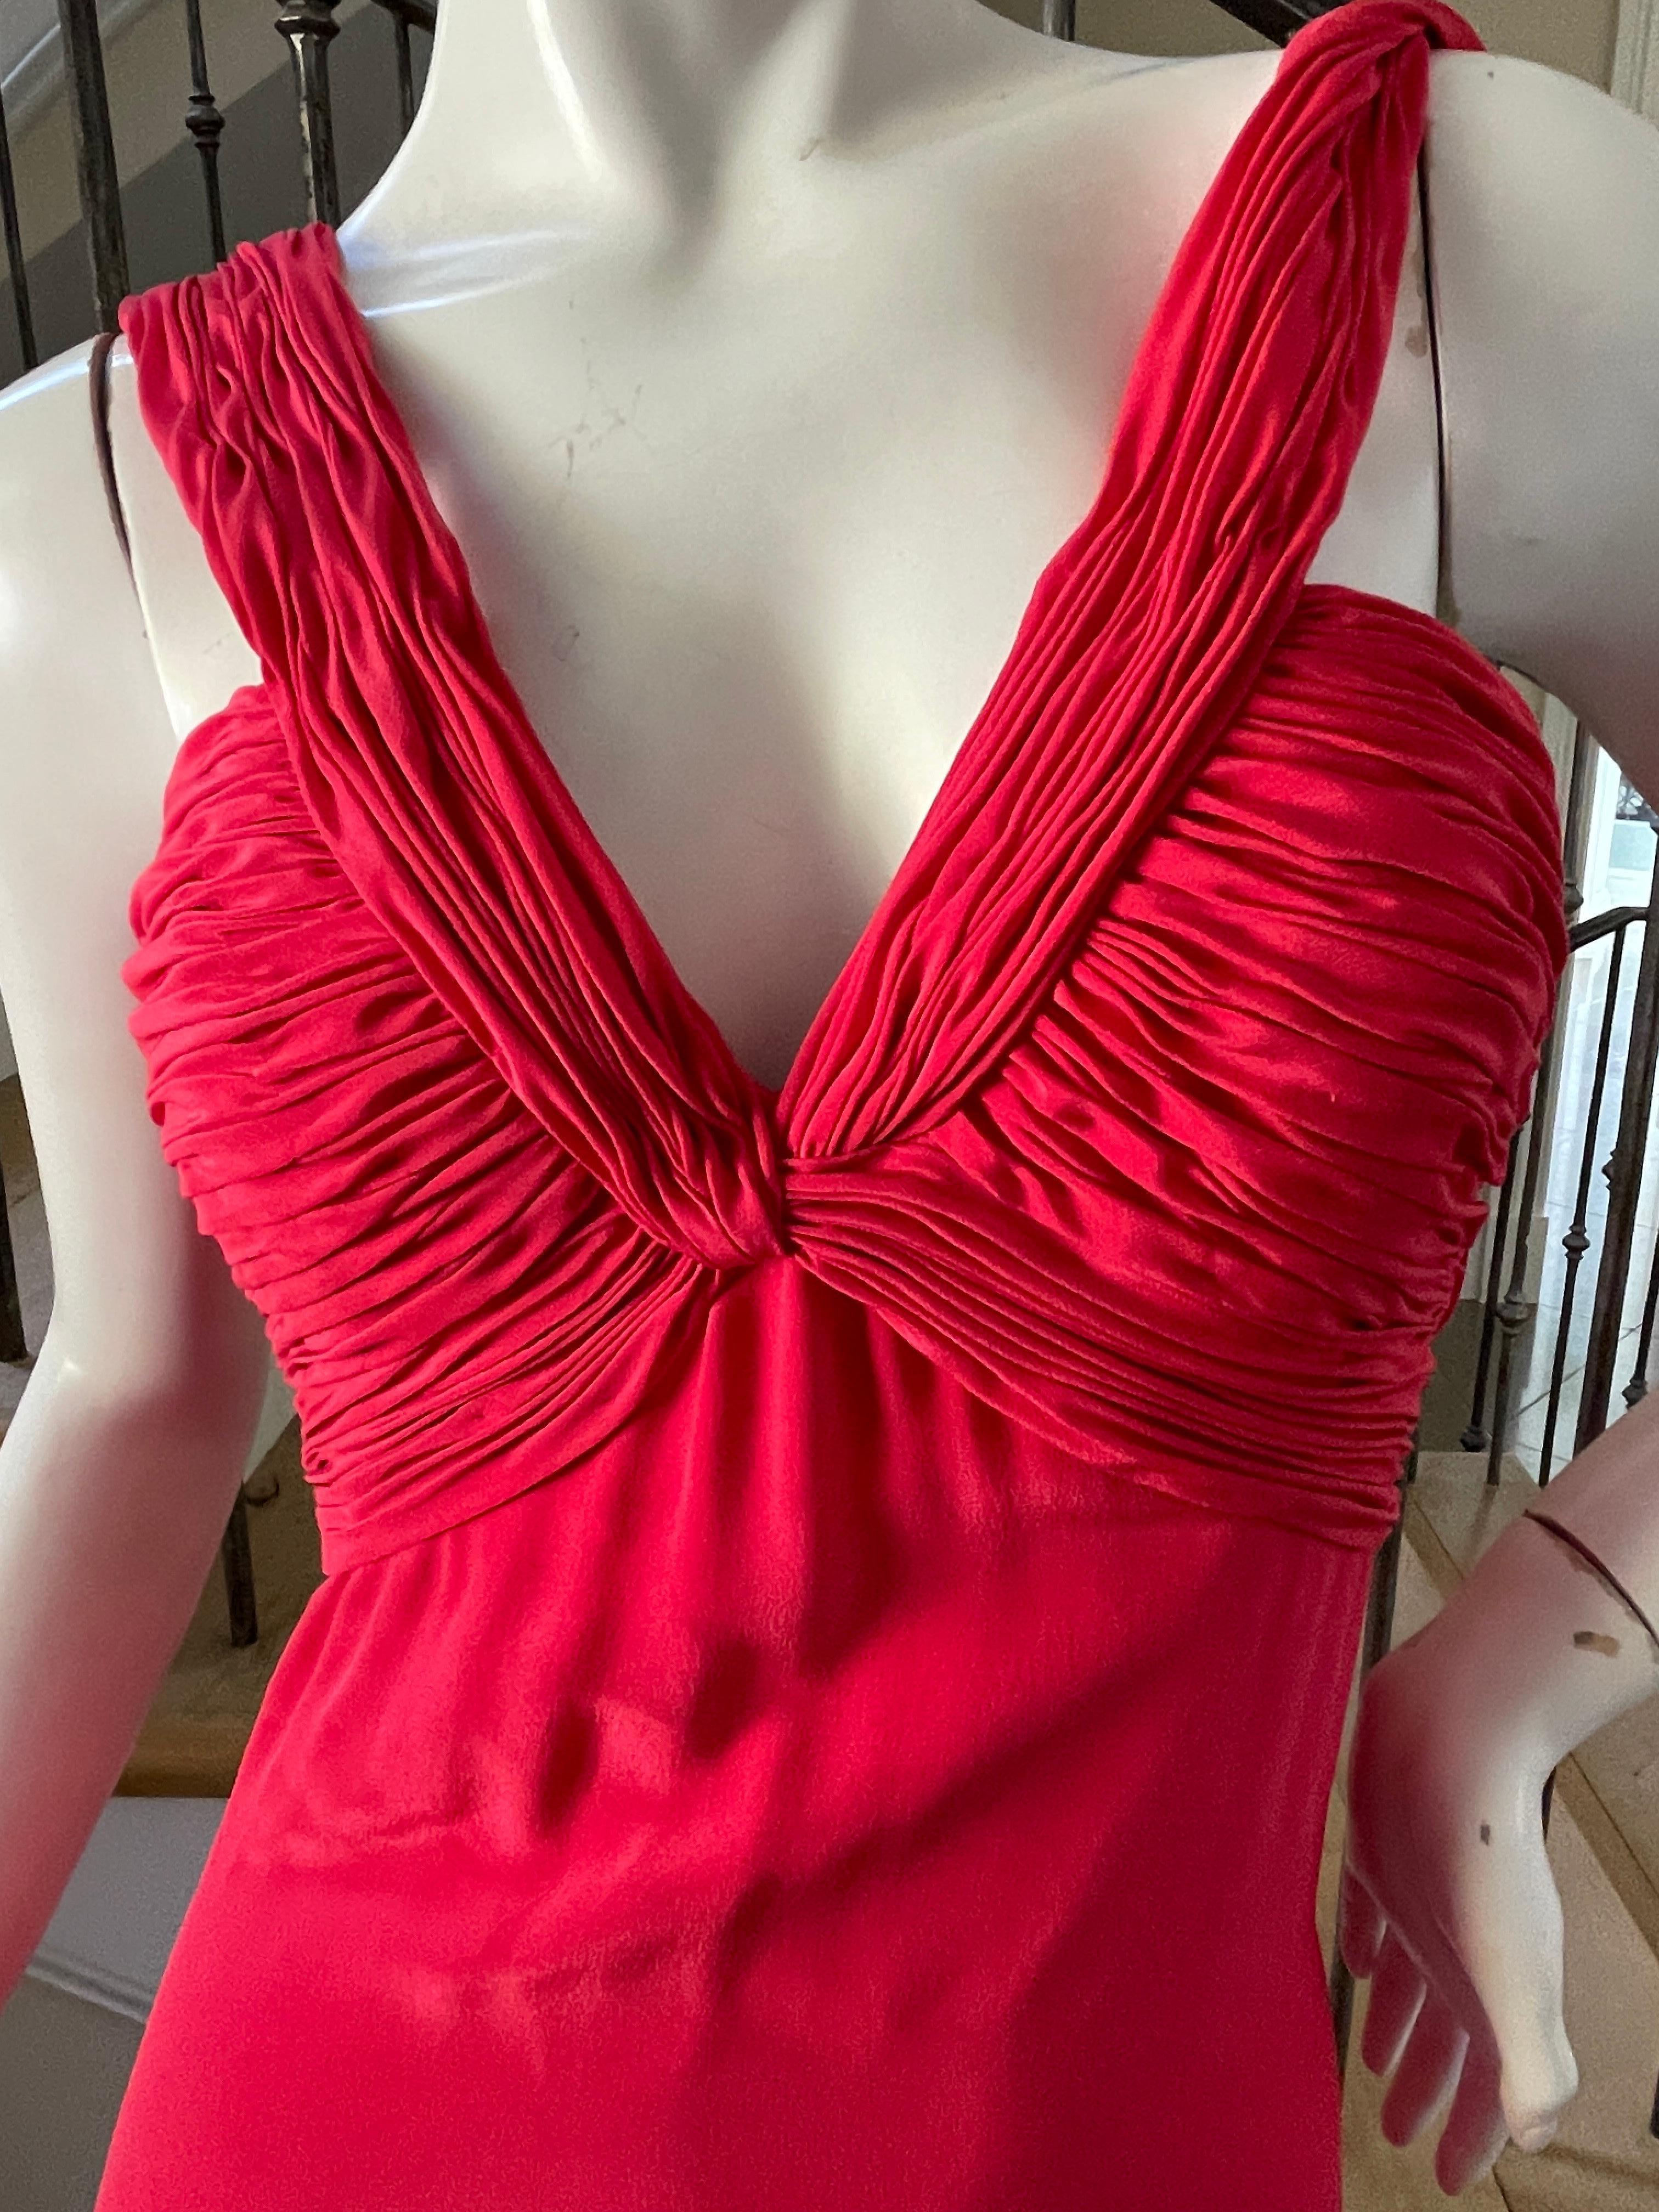 red plunging neckline dress